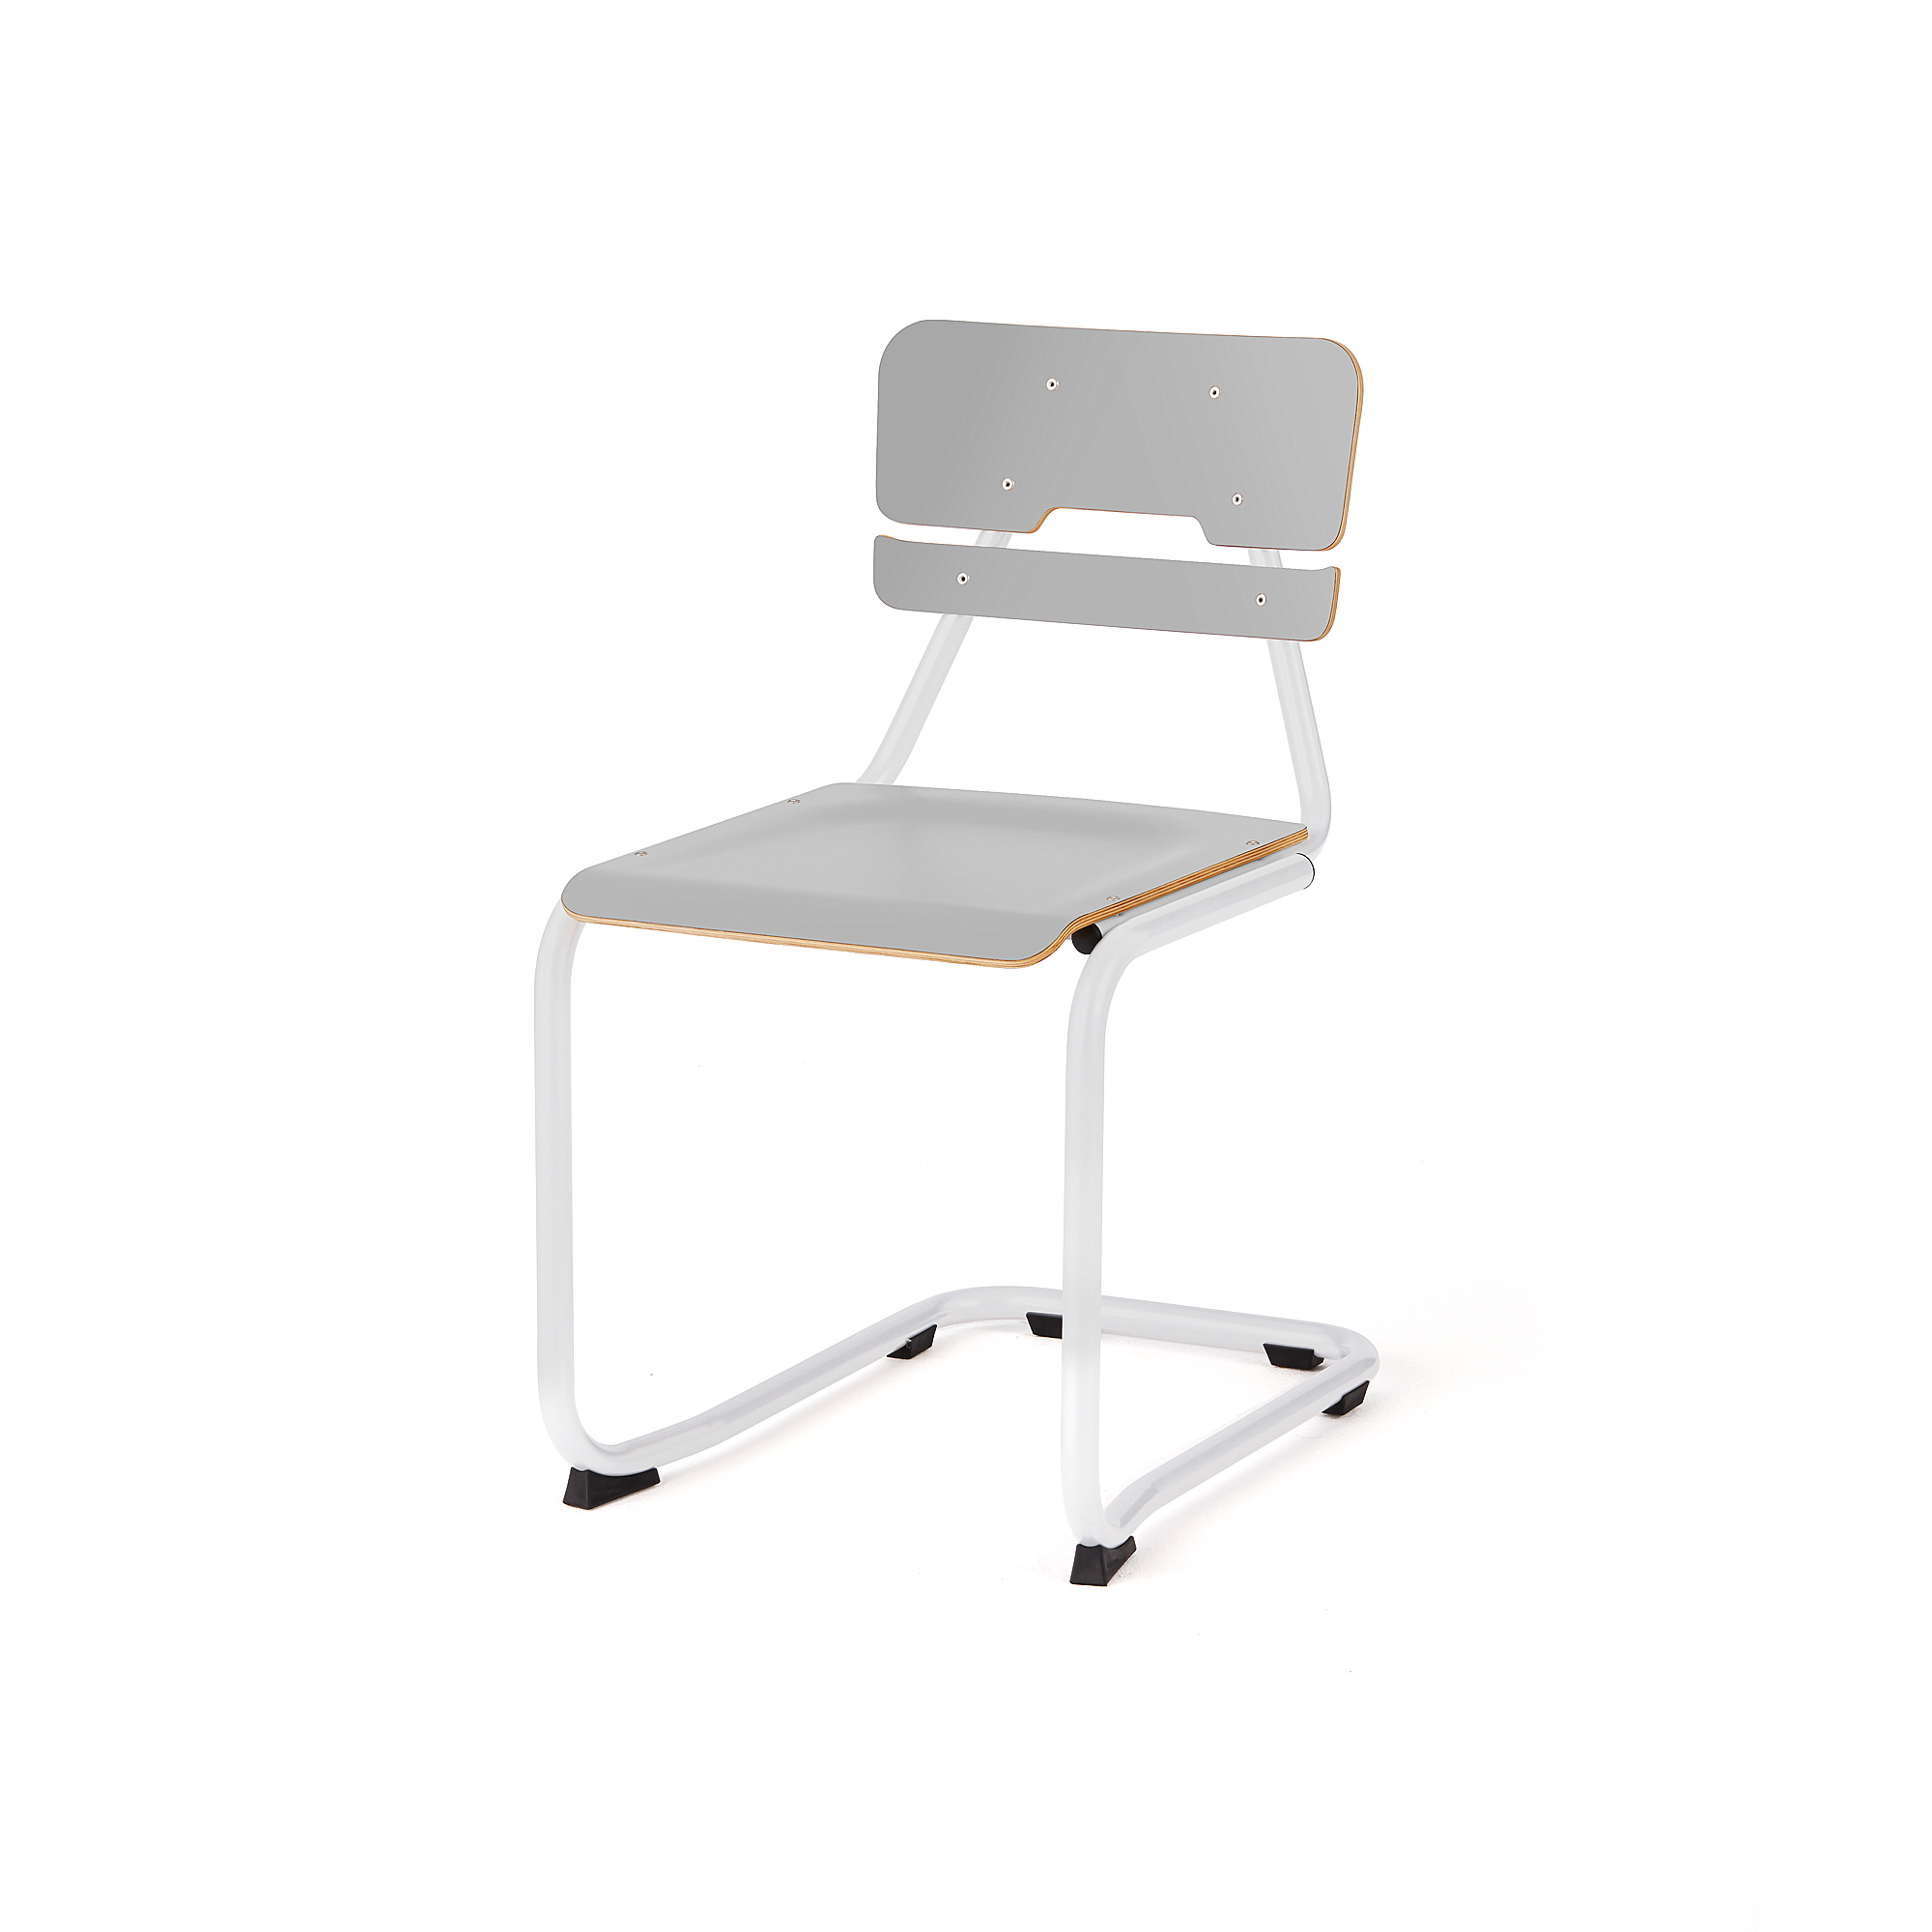 Školní židle LEGERE II, výška 450 mm, bílá, šedá